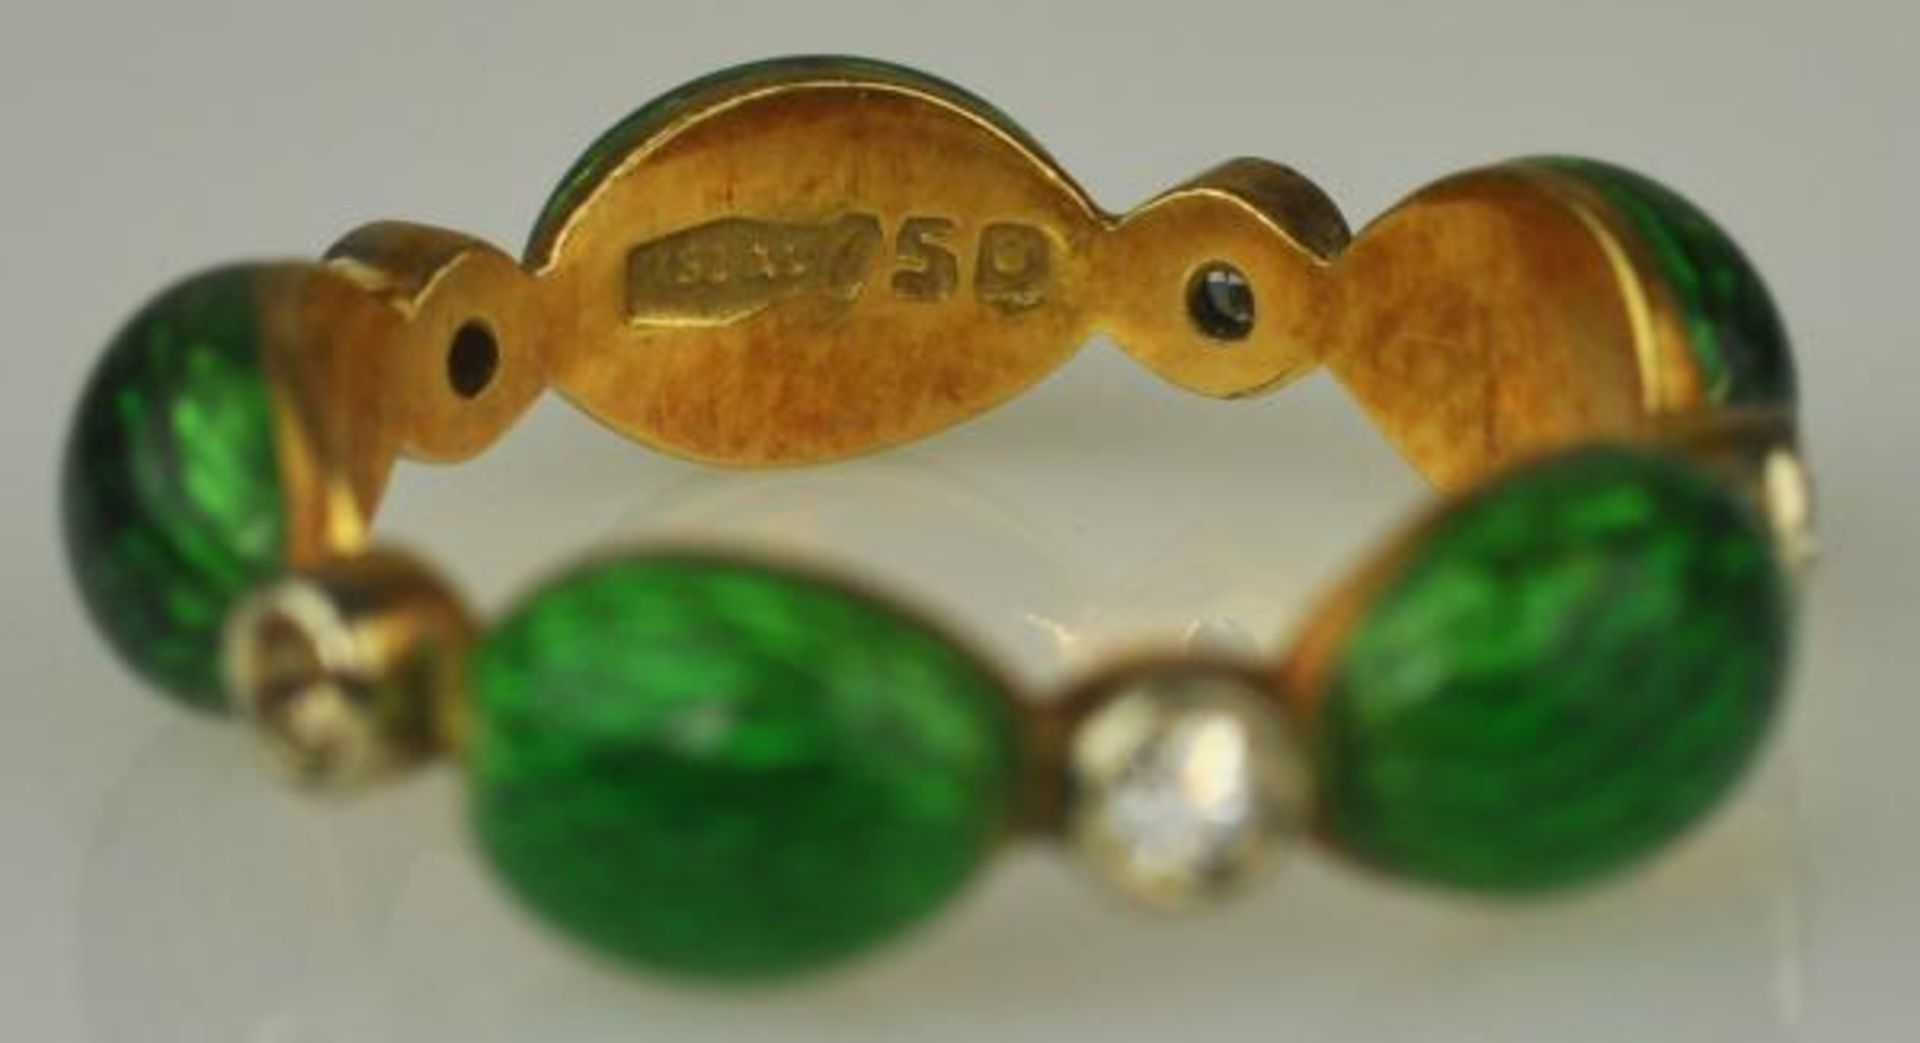 2 RINGE verschieden, Ring teilemailliert als Band, Gelbgold 18ct 3,3g und gerippter Ring grün - Bild 3 aus 4